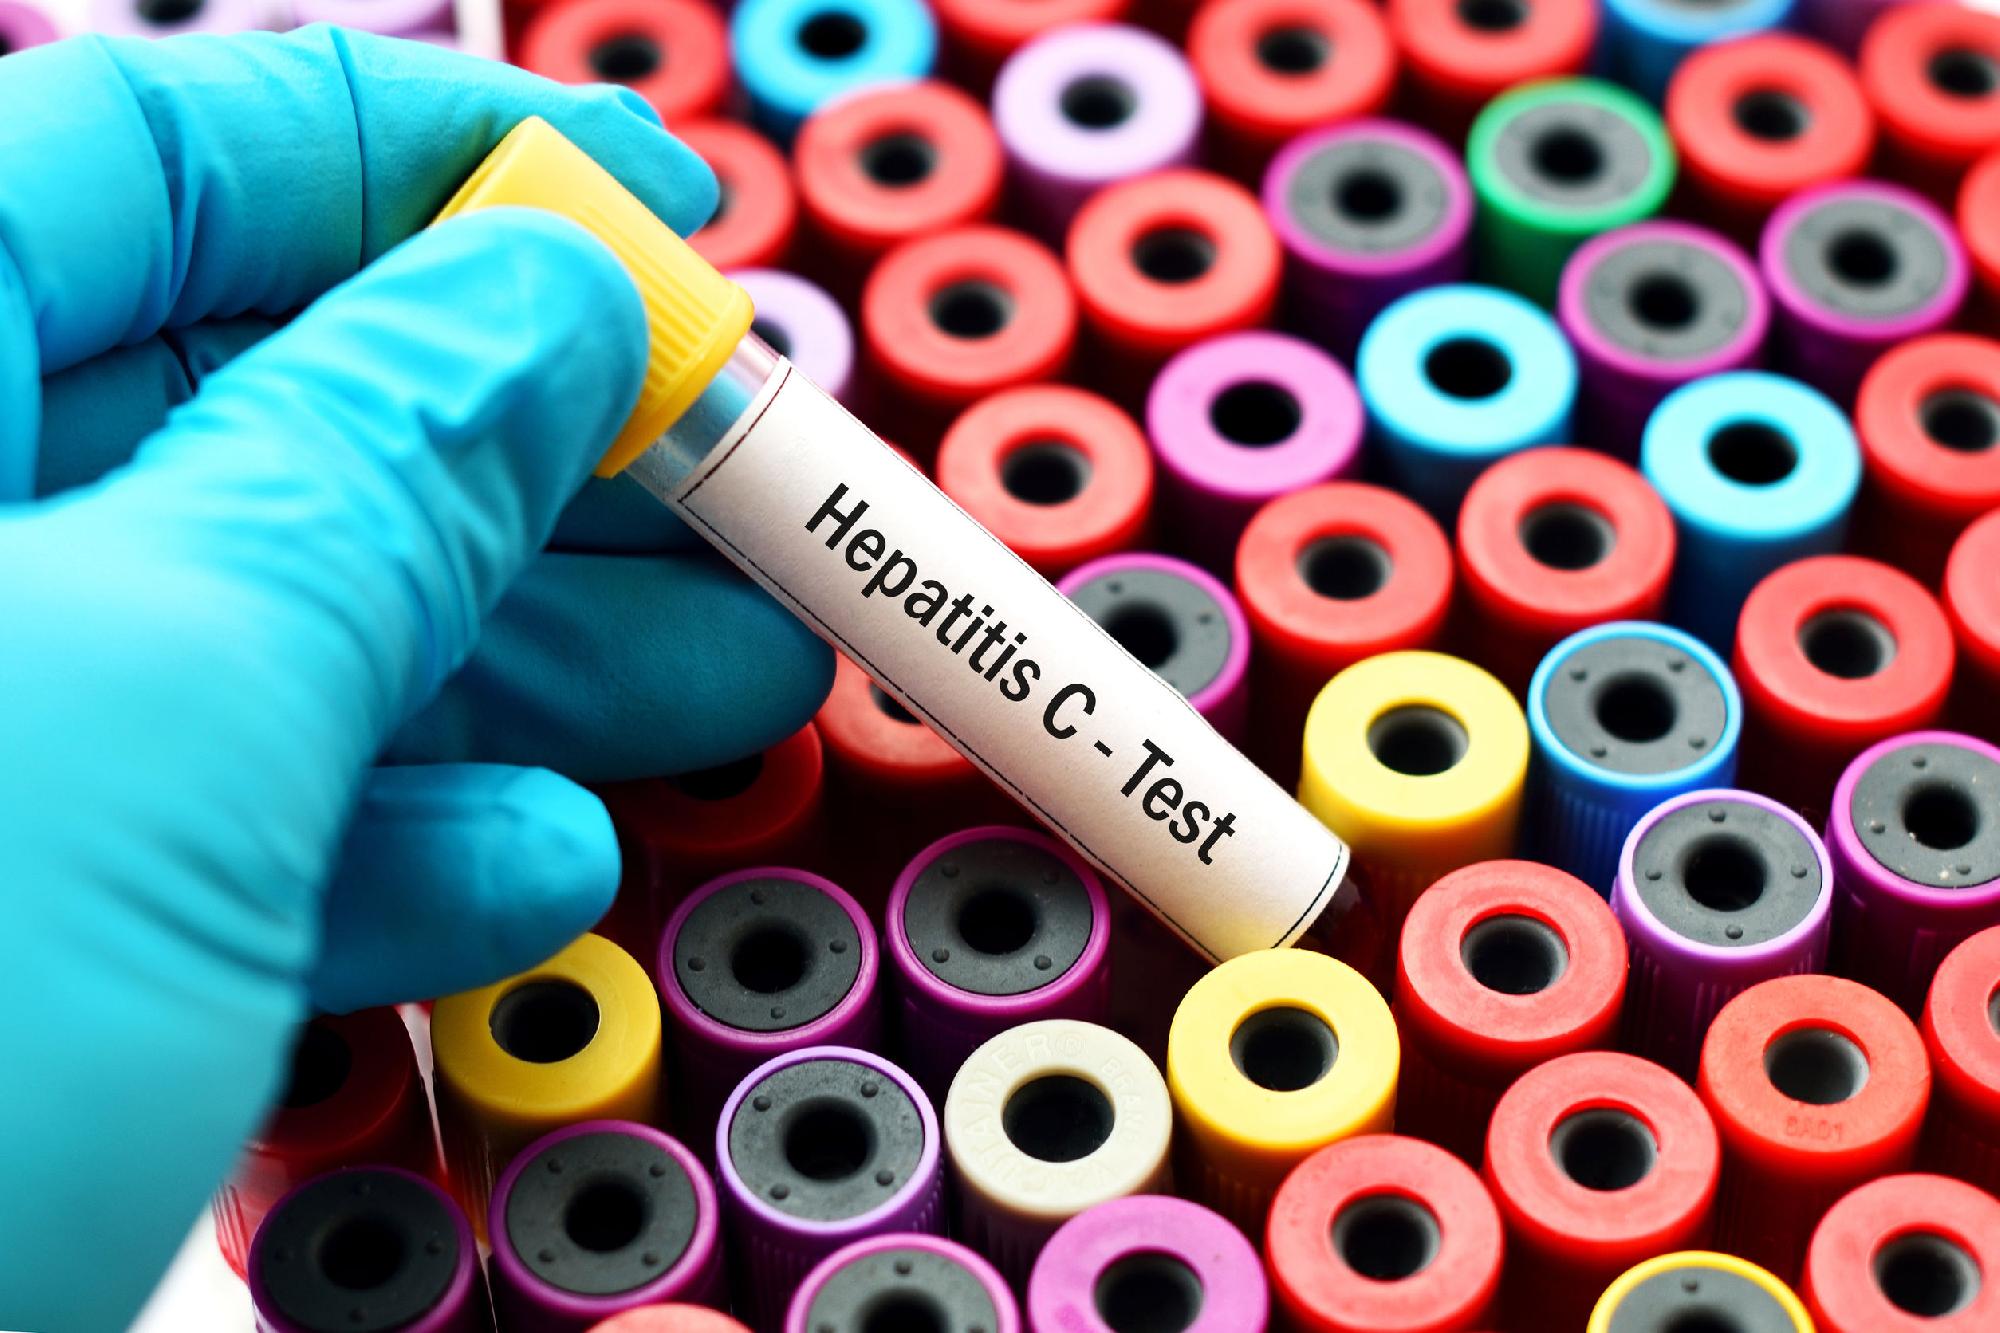 Ingyenes hepatitis C-szűrés lesz az országban több helyen